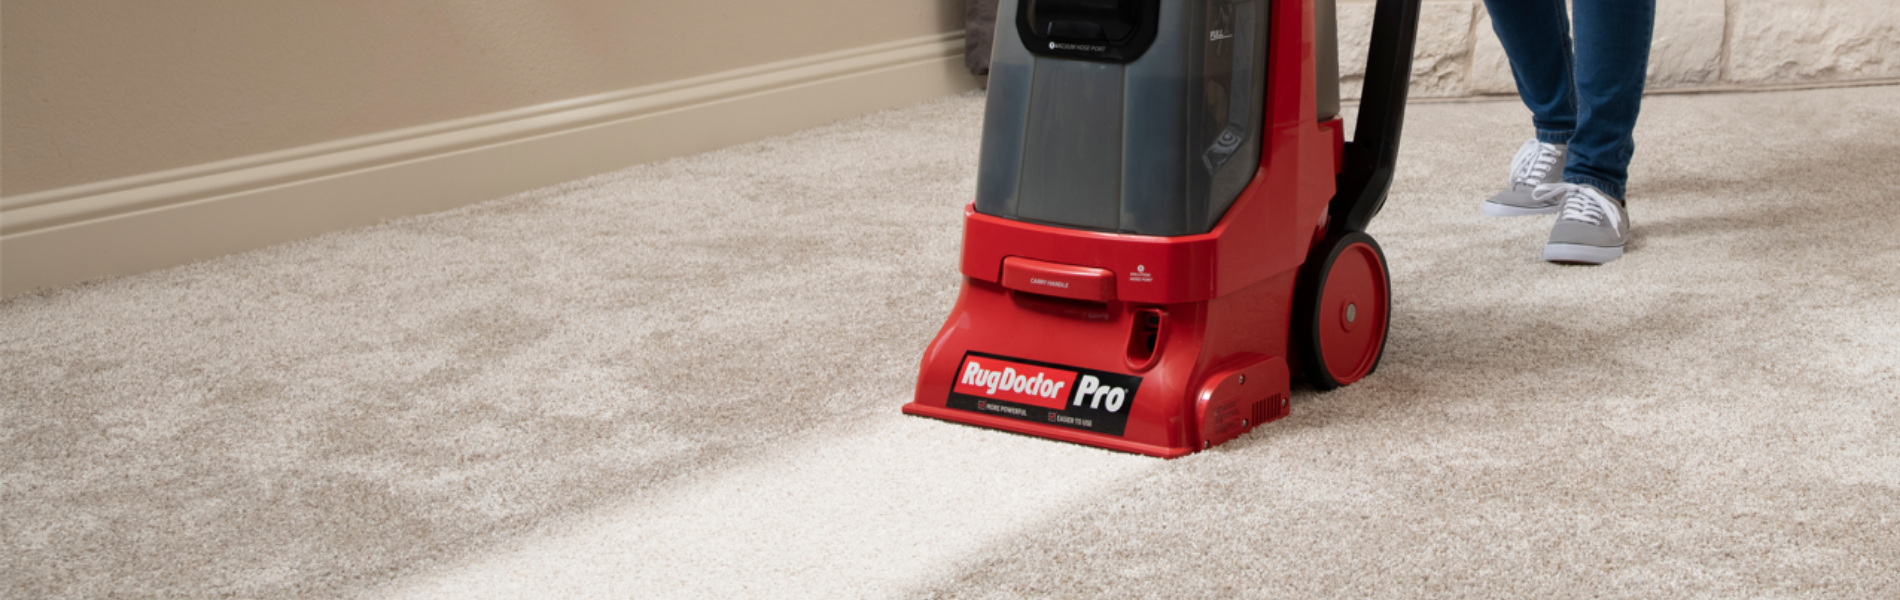 Rug Doctor Pro Deep Carpet Cleaner at